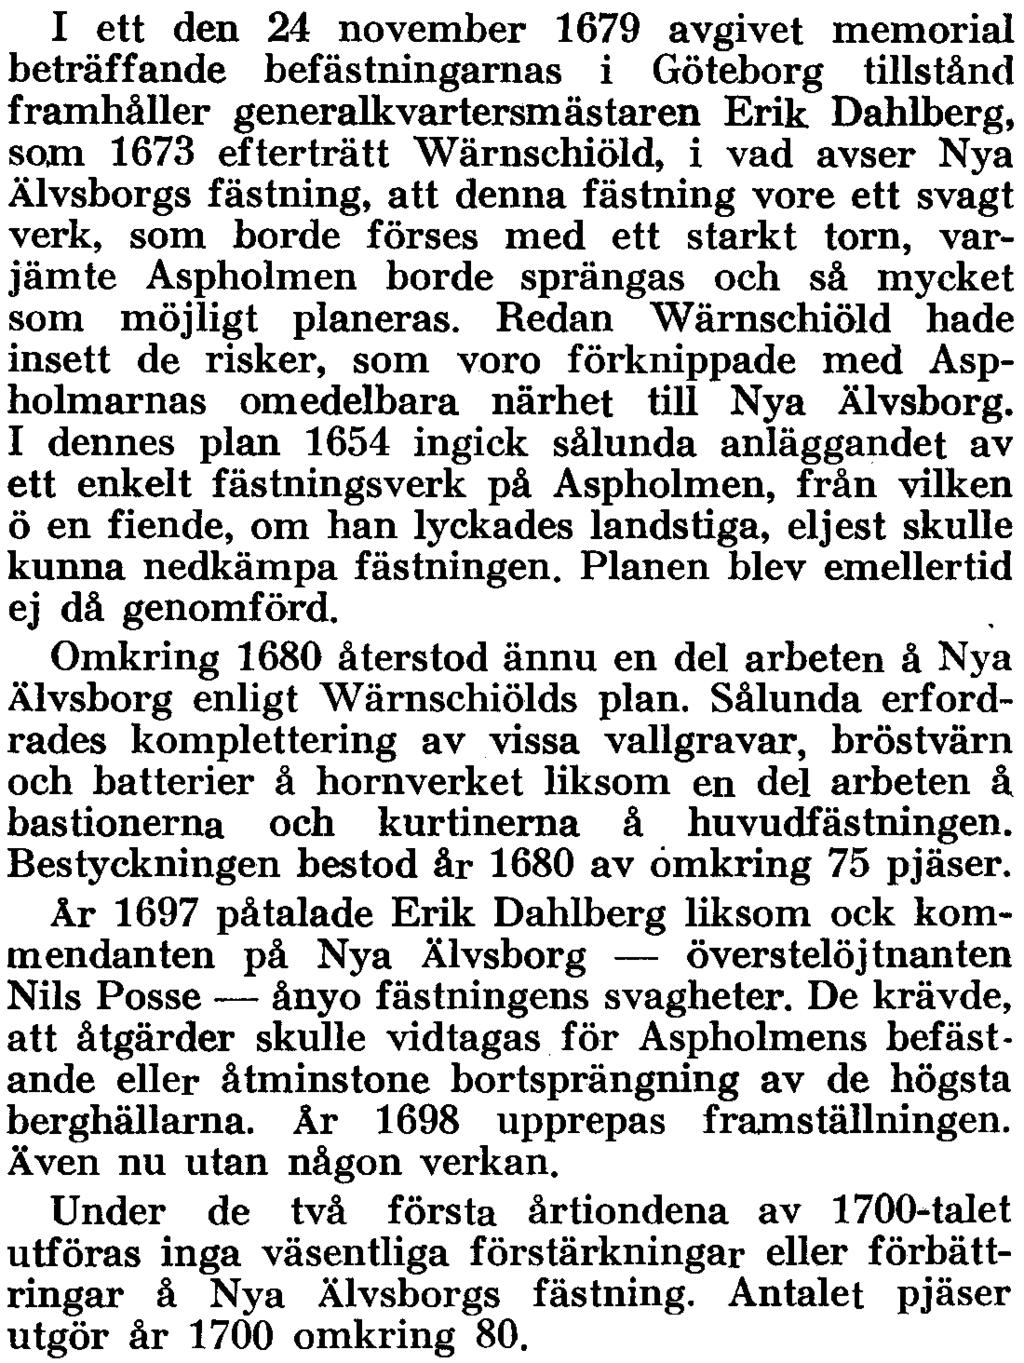 Därvid utlovades en närmare skildring av Nya Älvsborgs fästning och dess strider. Arbetet å befästningarna å Kyrkogårdsholmen påbörjades år 1653 under ledning av generalkvartermästaren Wärnschiöld.